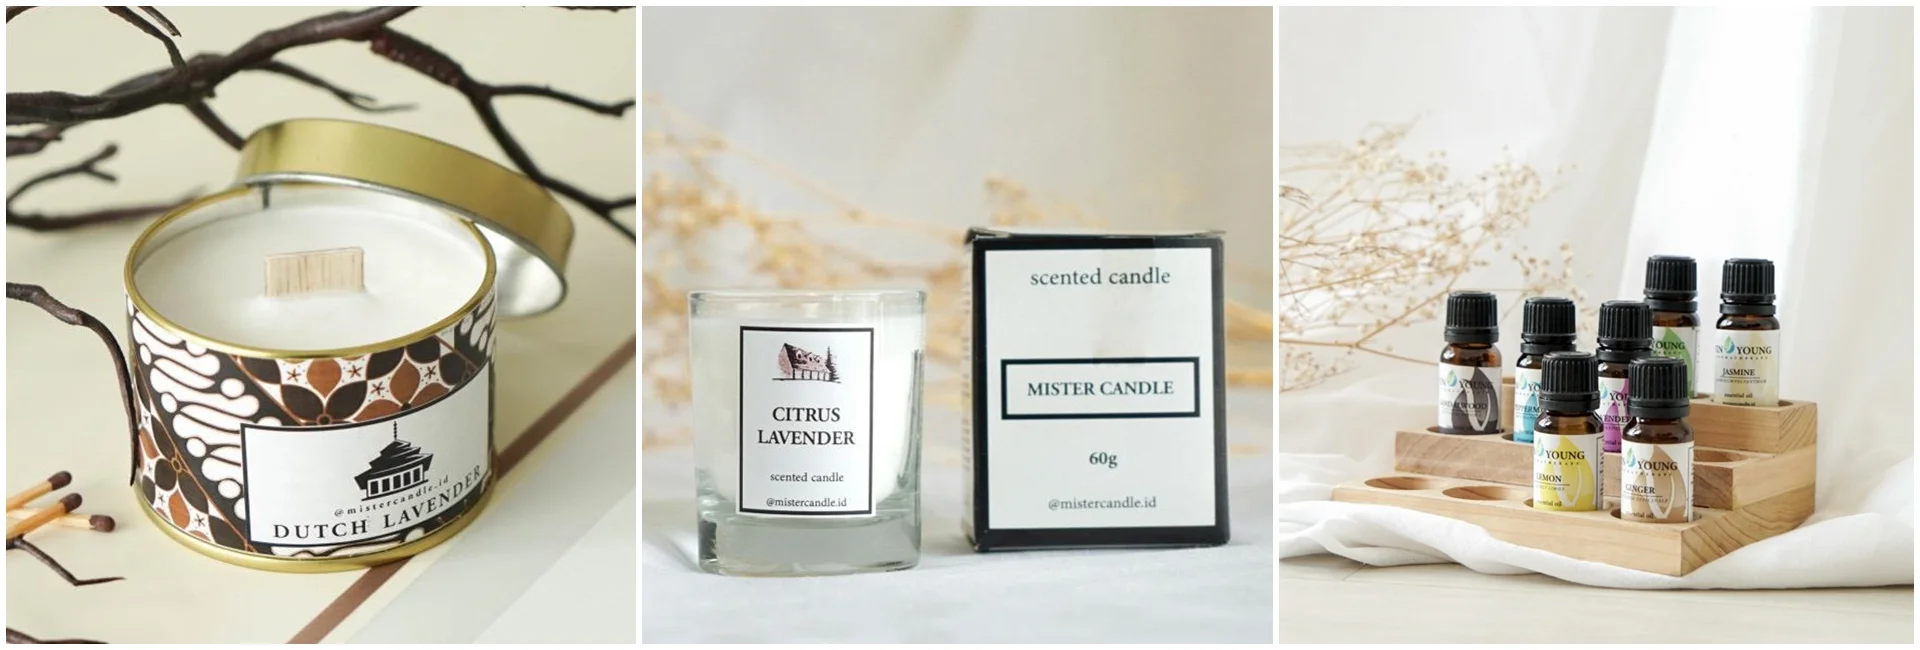 Beberapa produk unggulan Mister Candle, yaitu scented-candle dan oil aromaterapi.